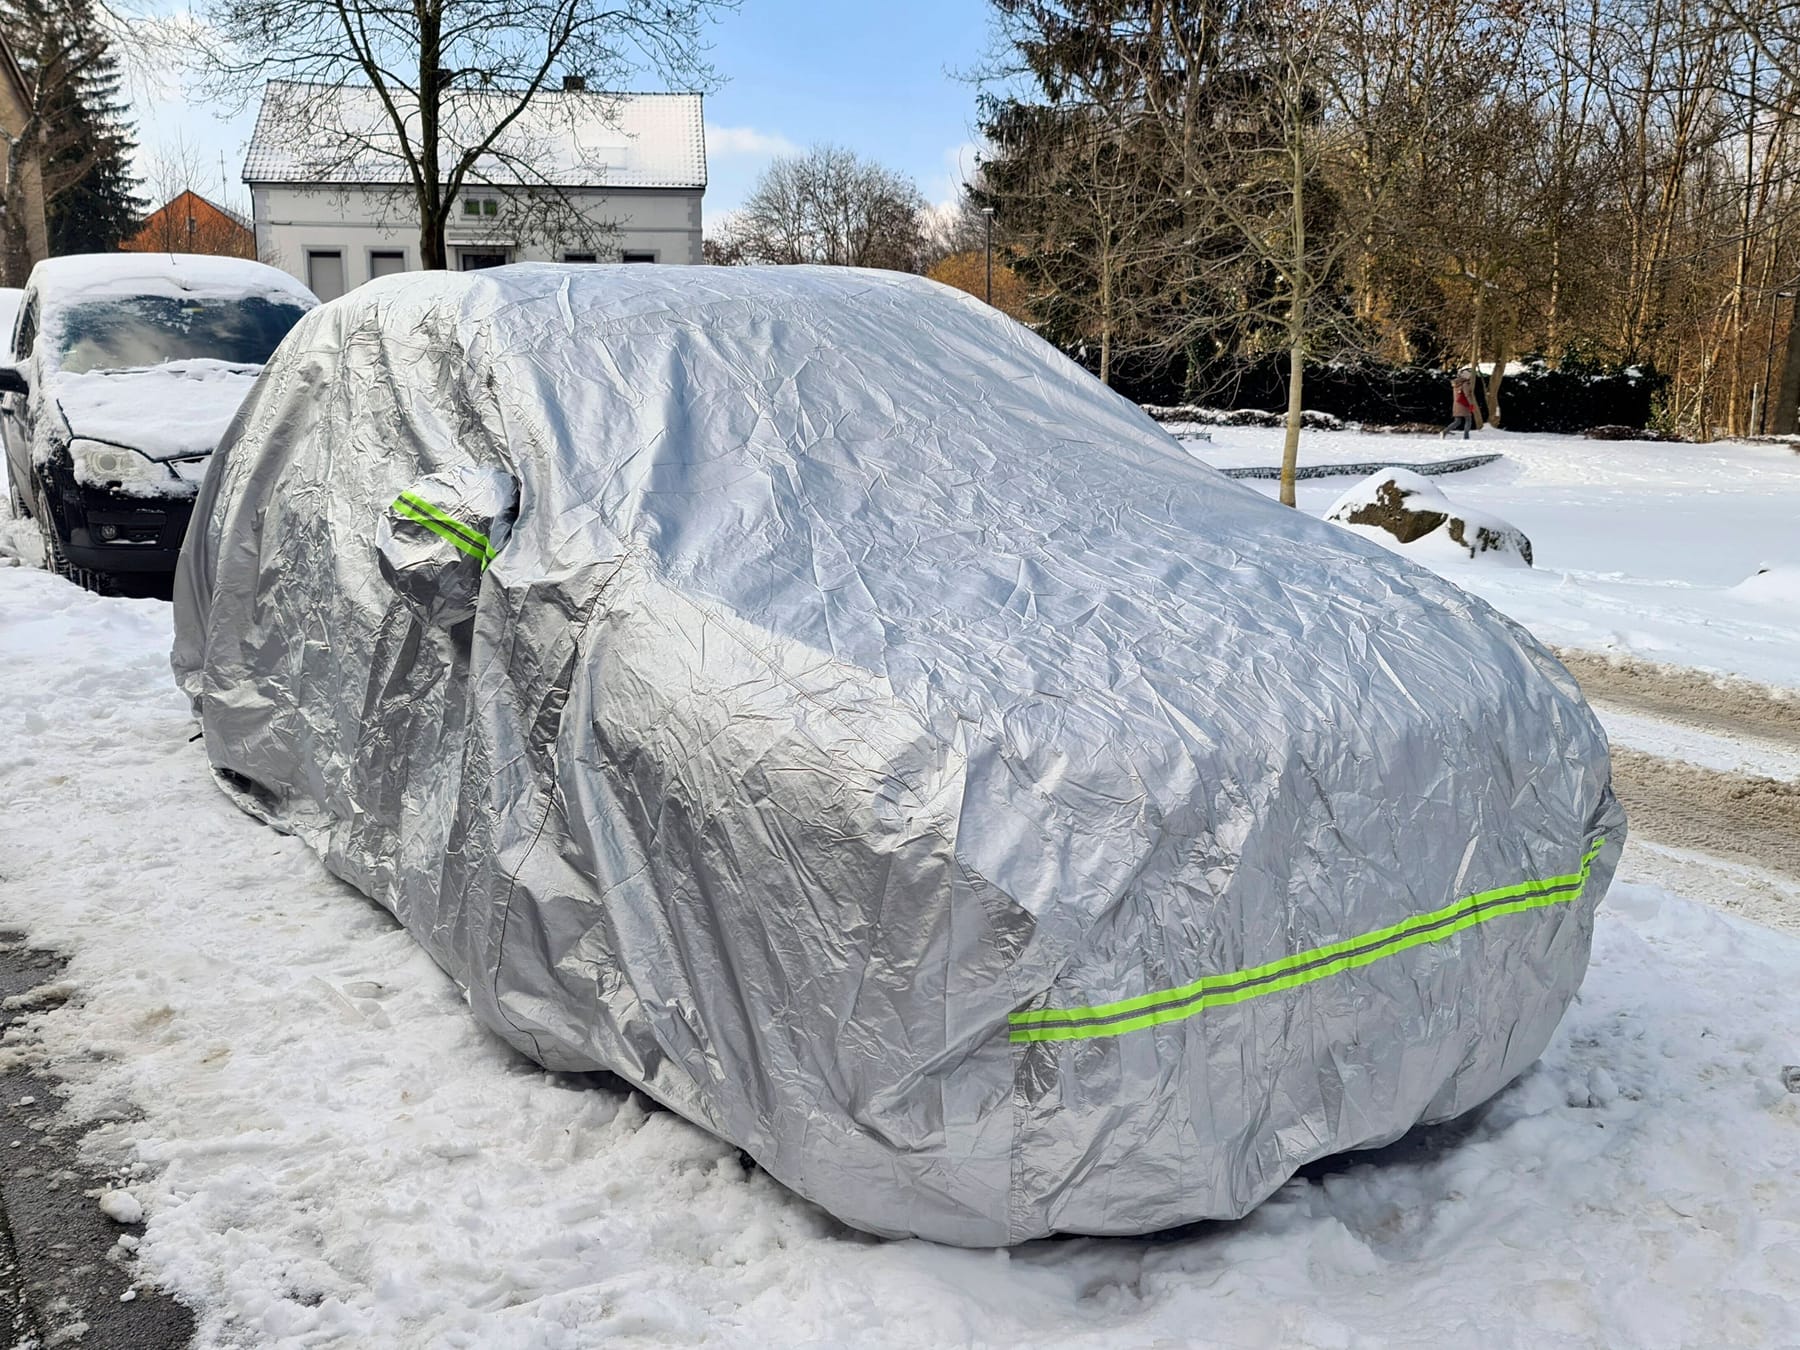 Winterausrüstung beim Auto: Unterschiedliche Pflichten in den